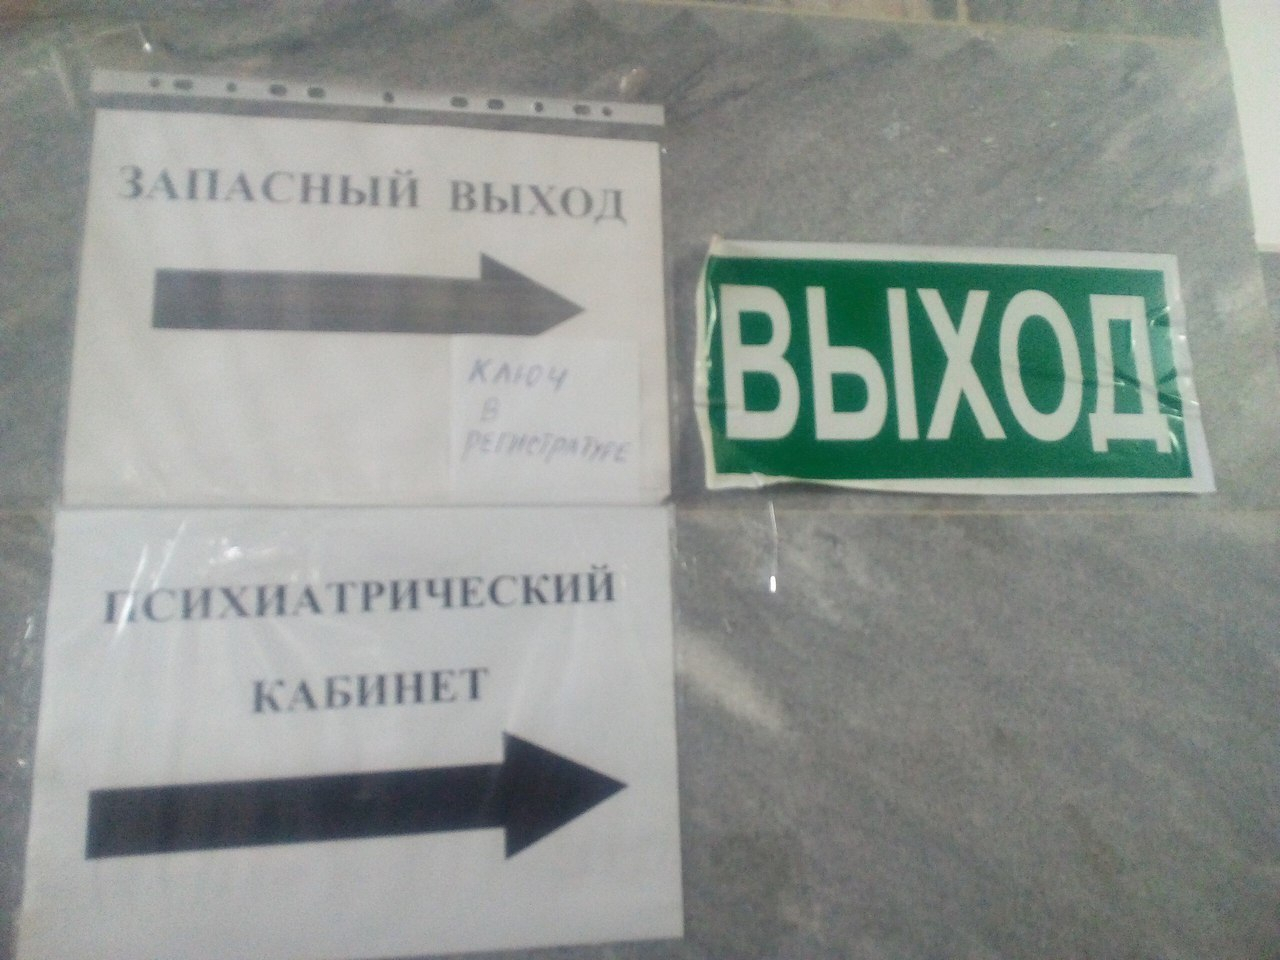 "Ключи в регистратуре" - в одной из касимовских поликлиник оказался закрыт пожарный выход